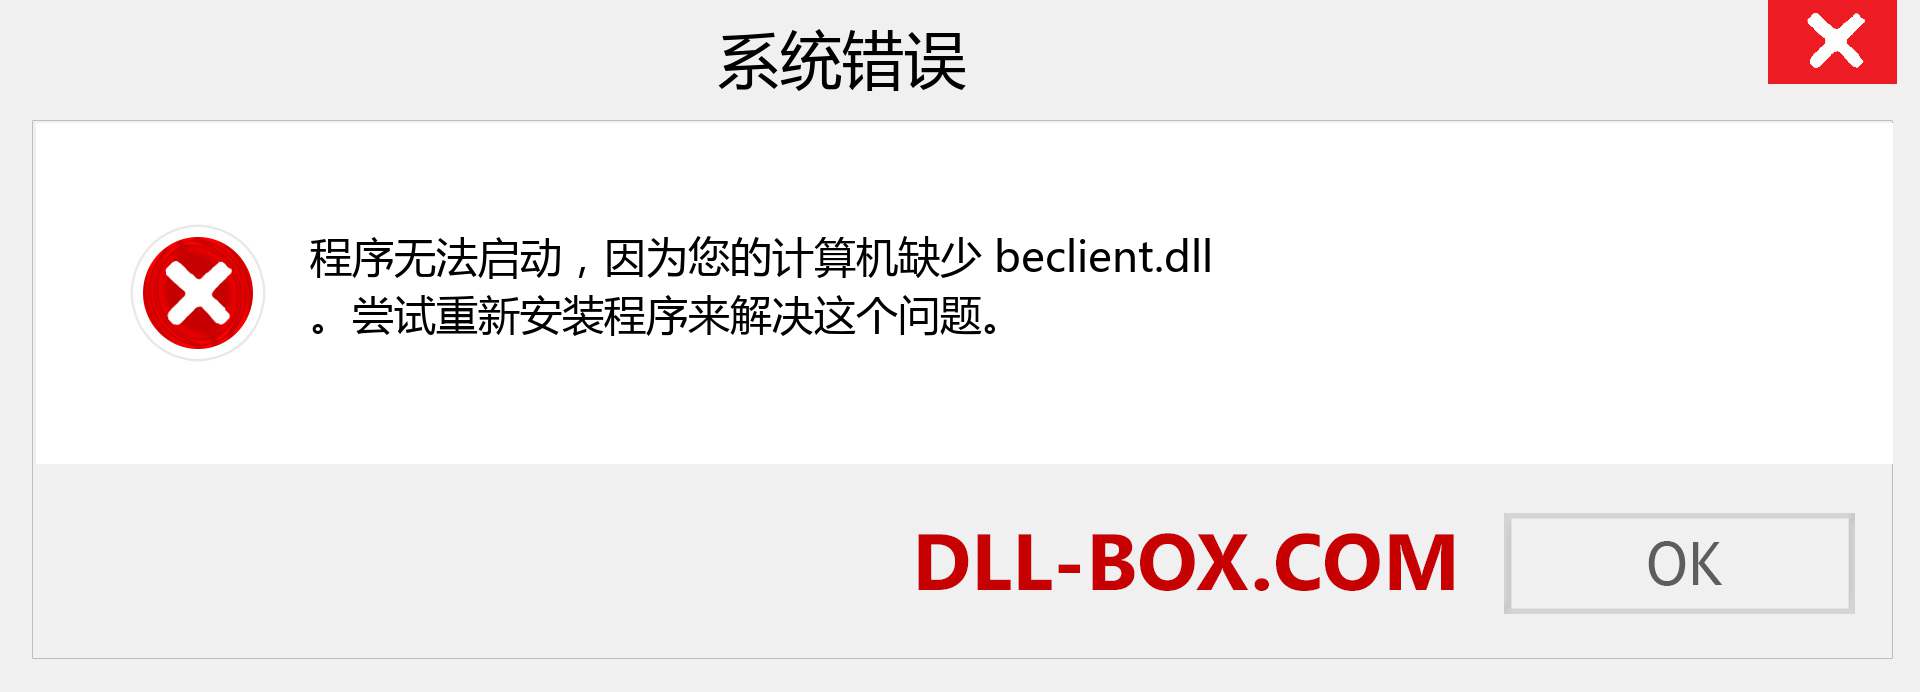 beclient.dll 文件丢失？。 适用于 Windows 7、8、10 的下载 - 修复 Windows、照片、图像上的 beclient dll 丢失错误